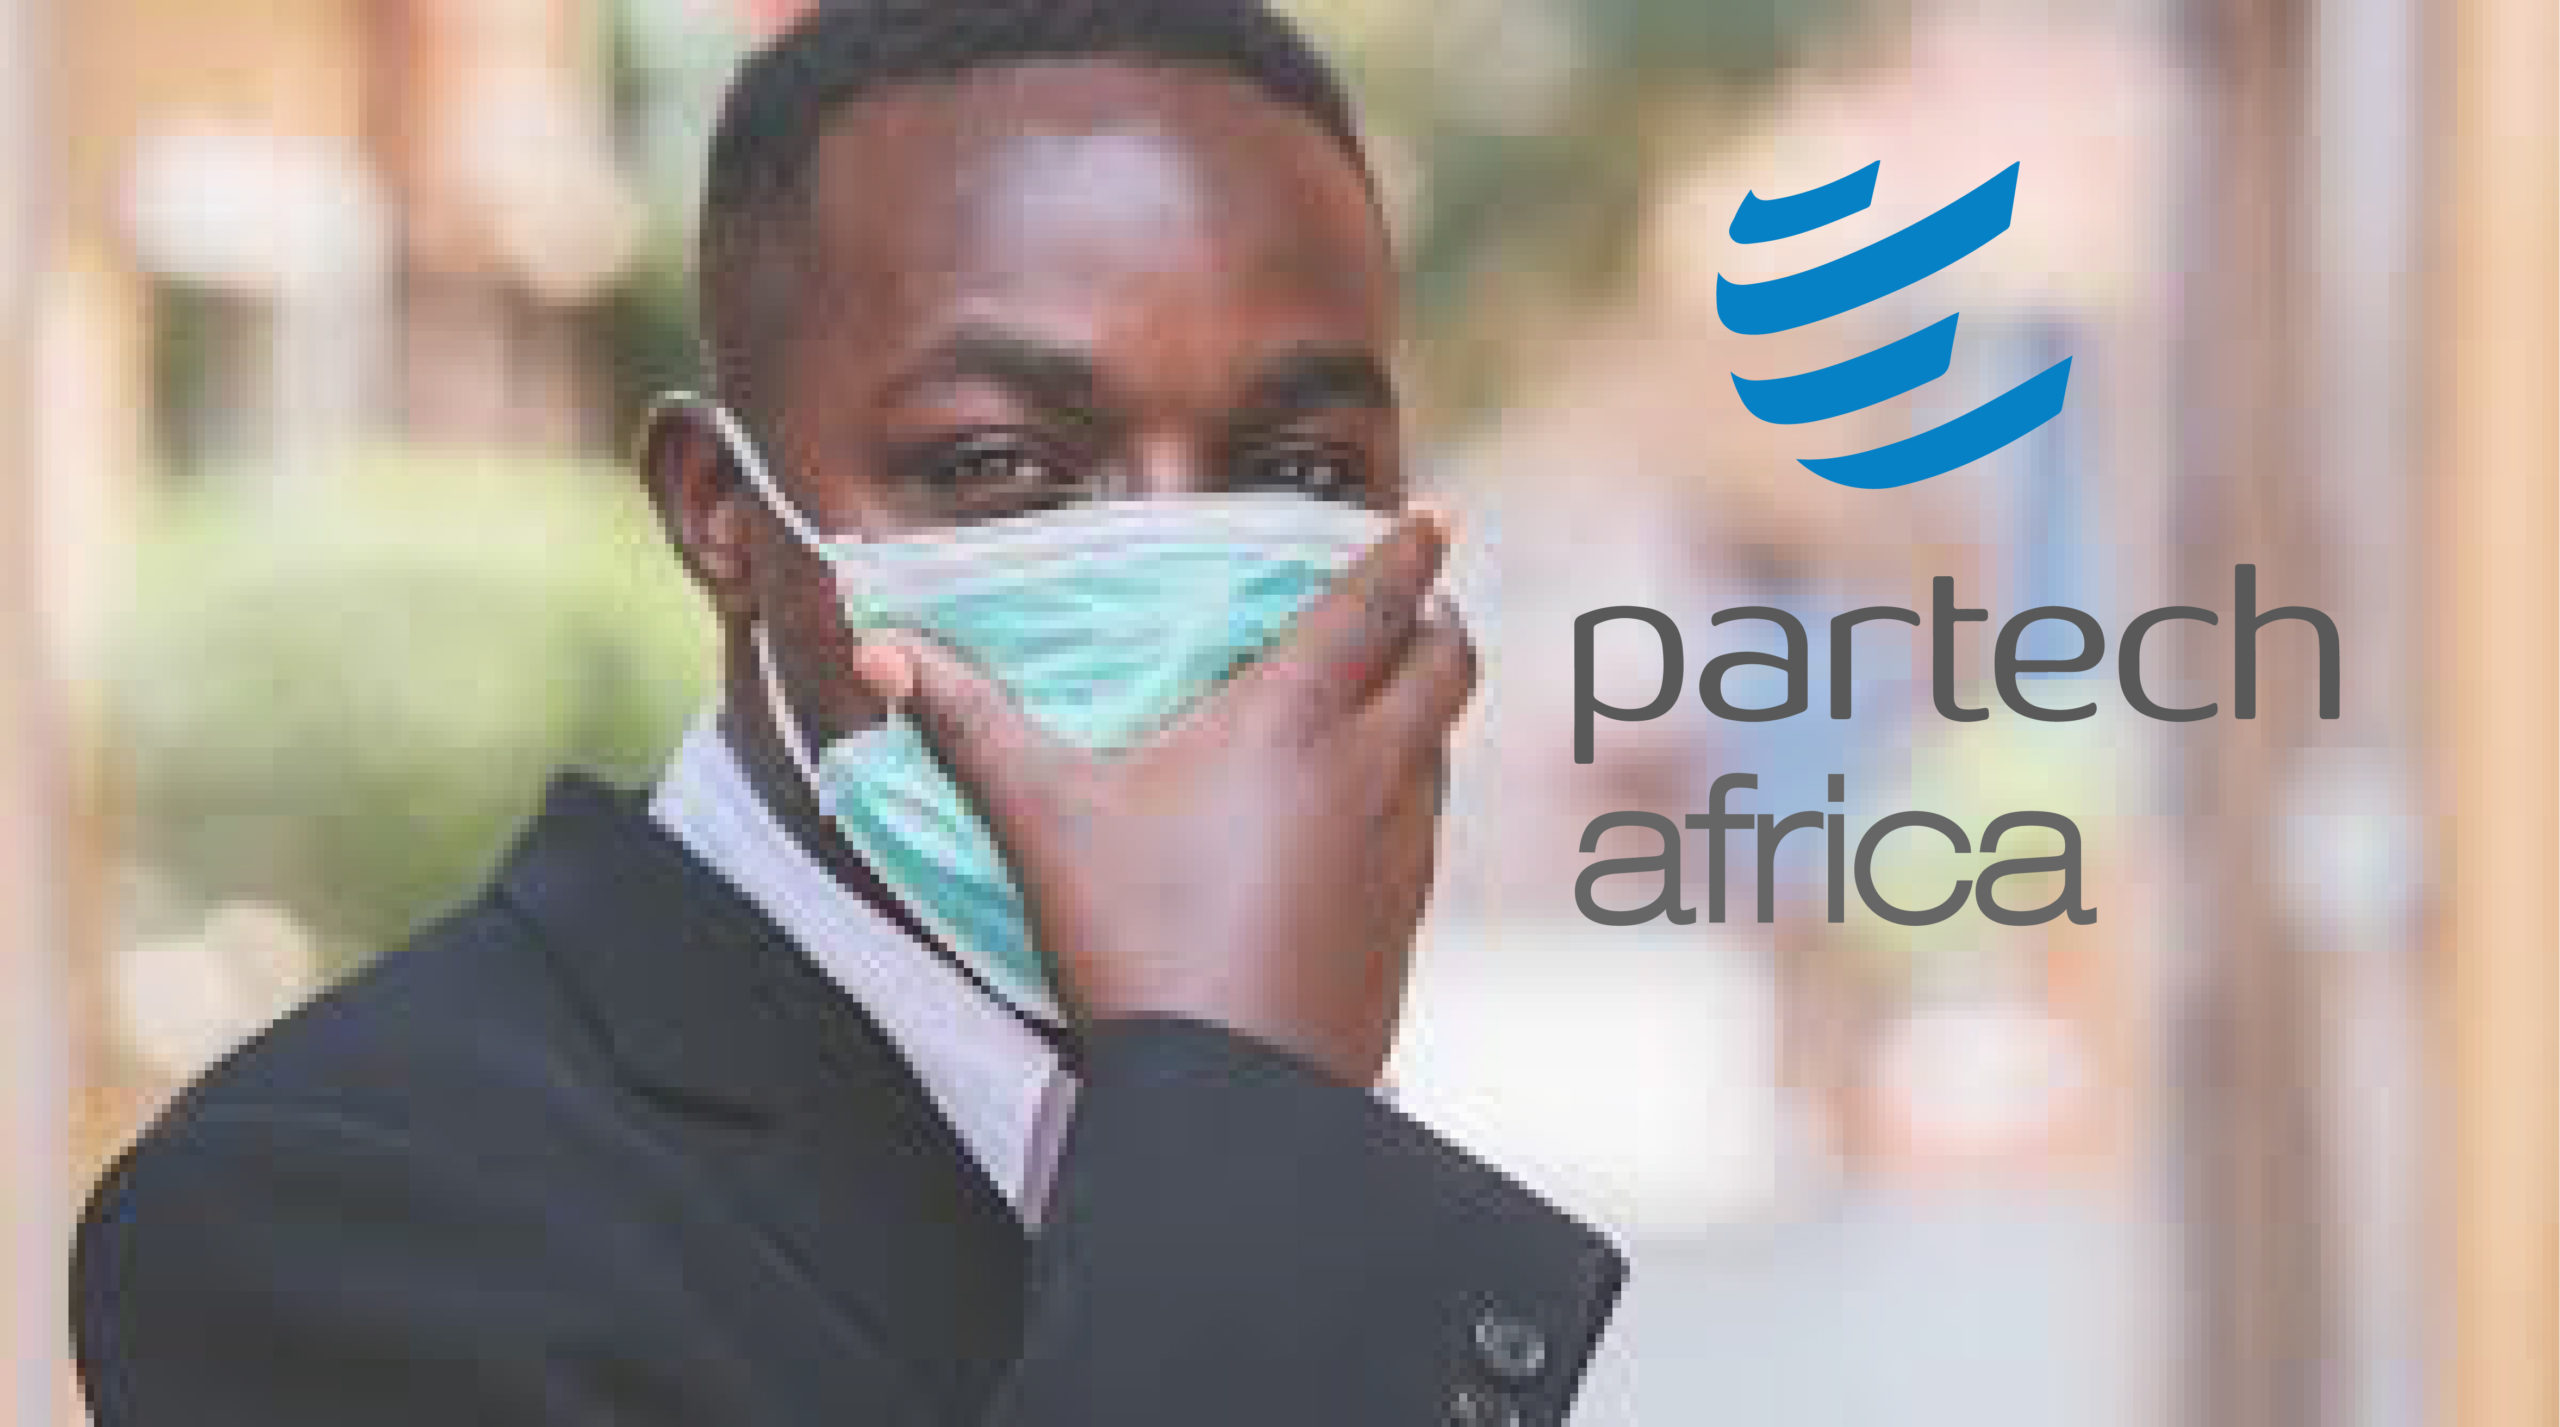 Rapport Partech Africa 2020: Impact de la pandémie sur les startups africaines